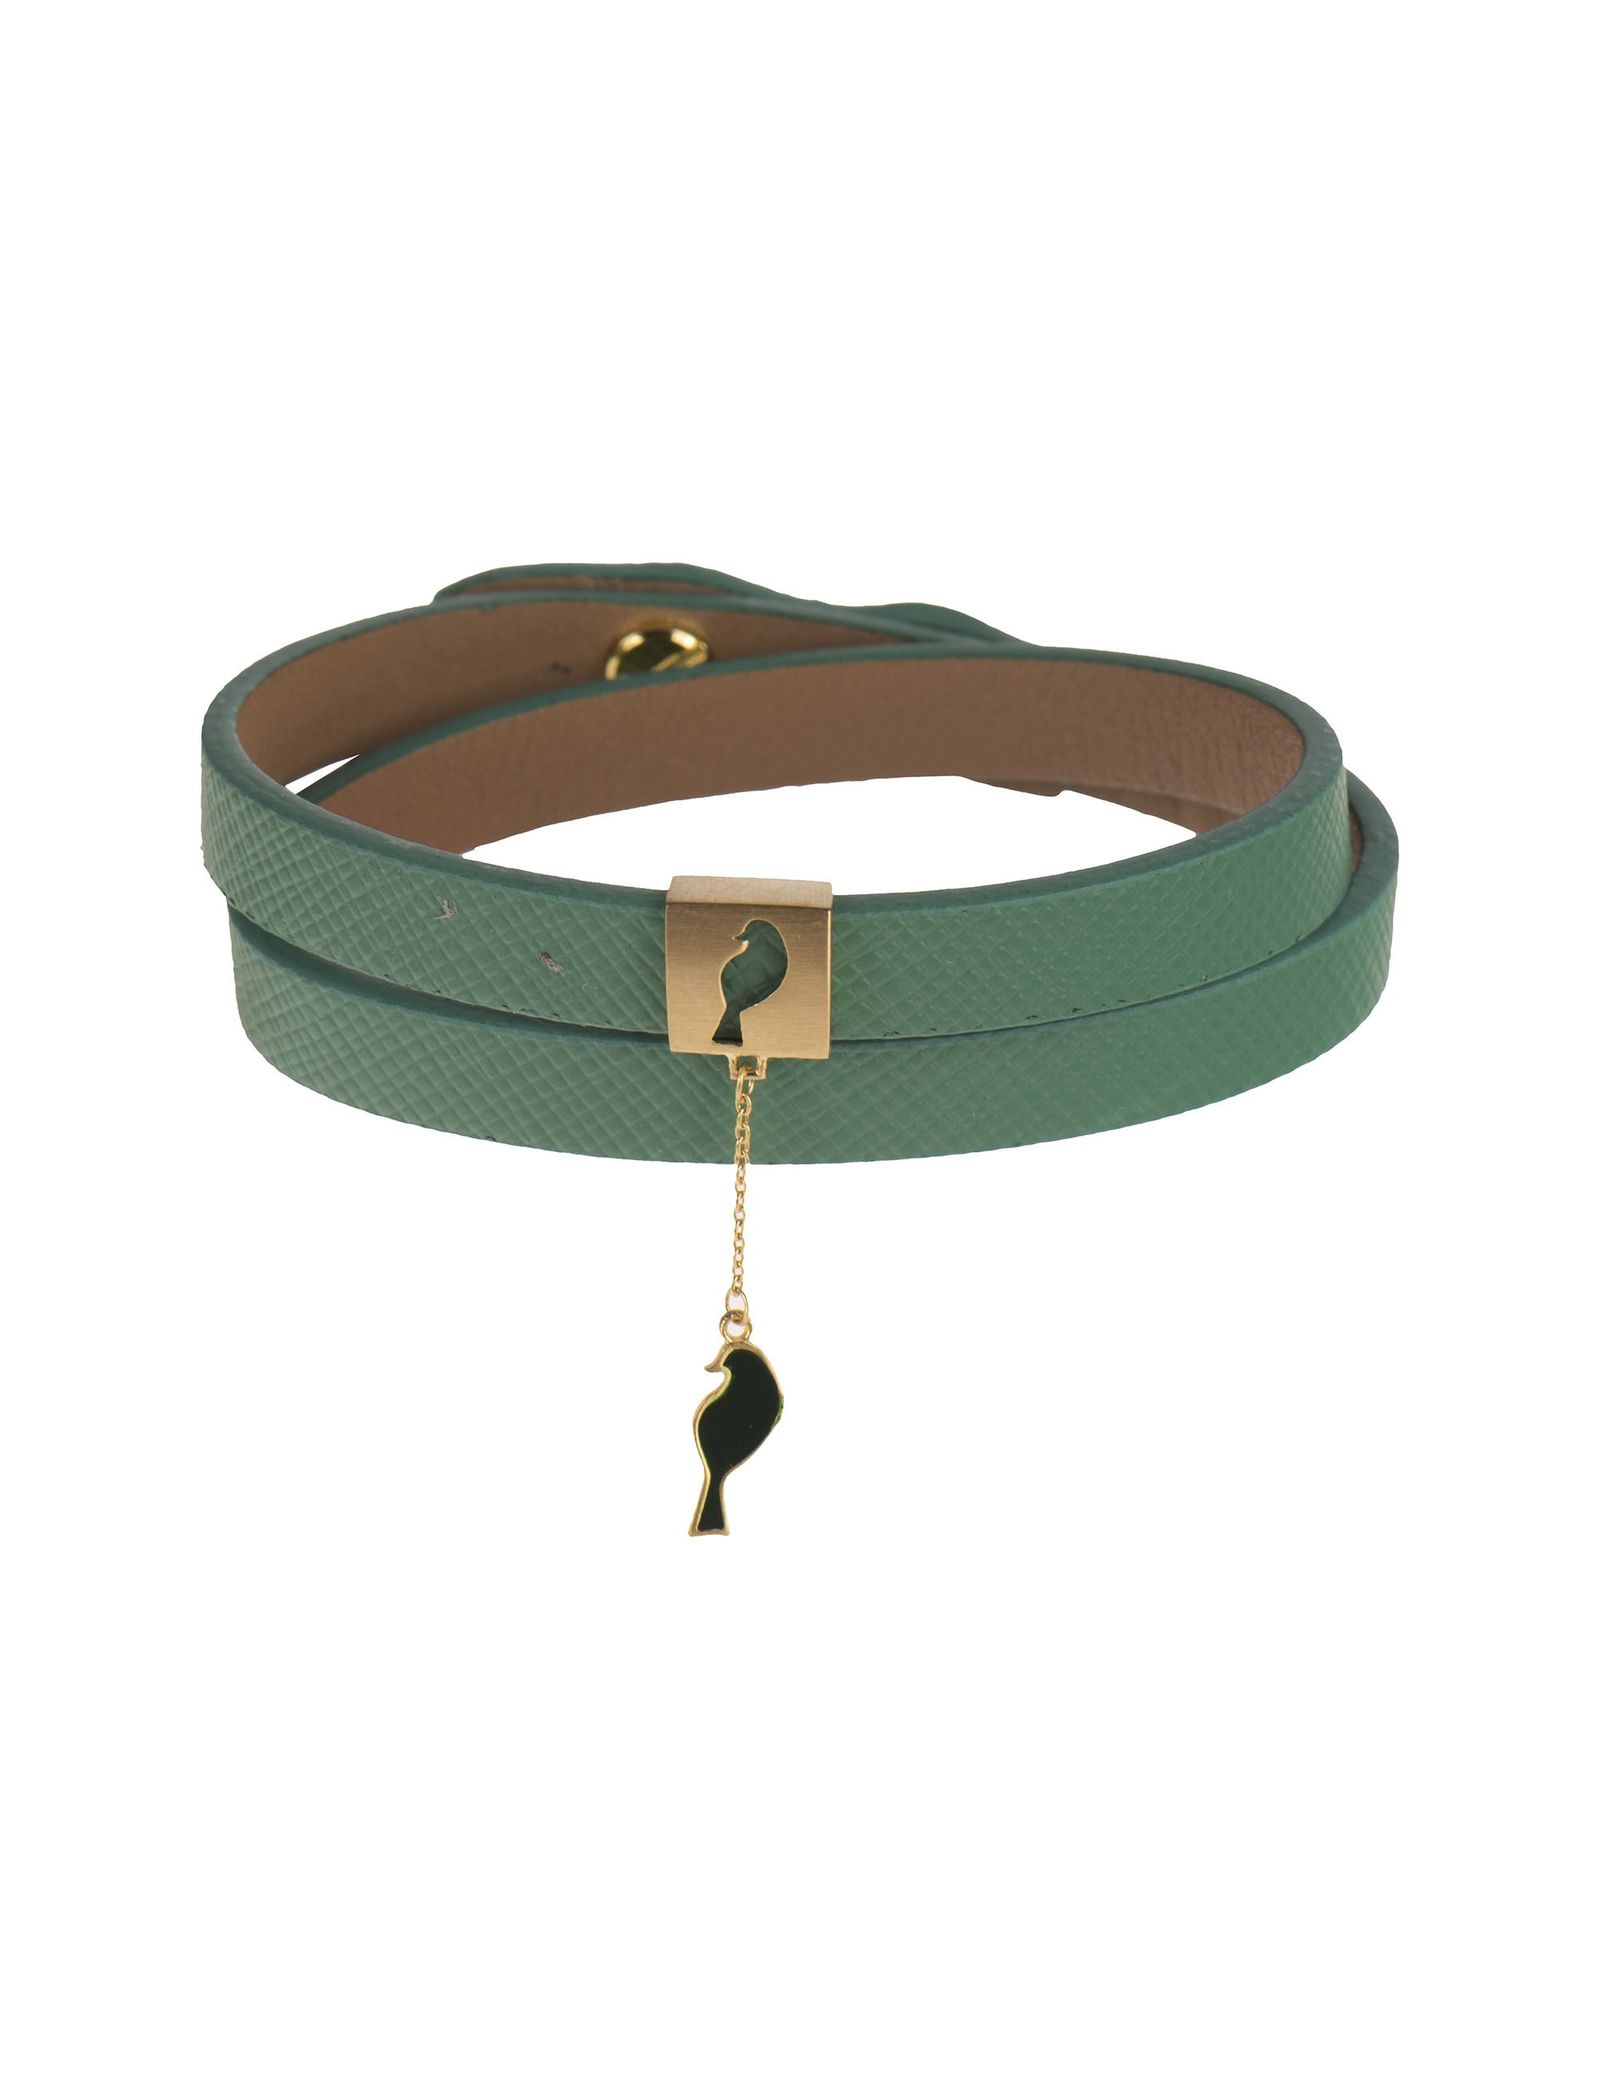 دستبند طلا زنانه - درسا - سبز آبي - 2